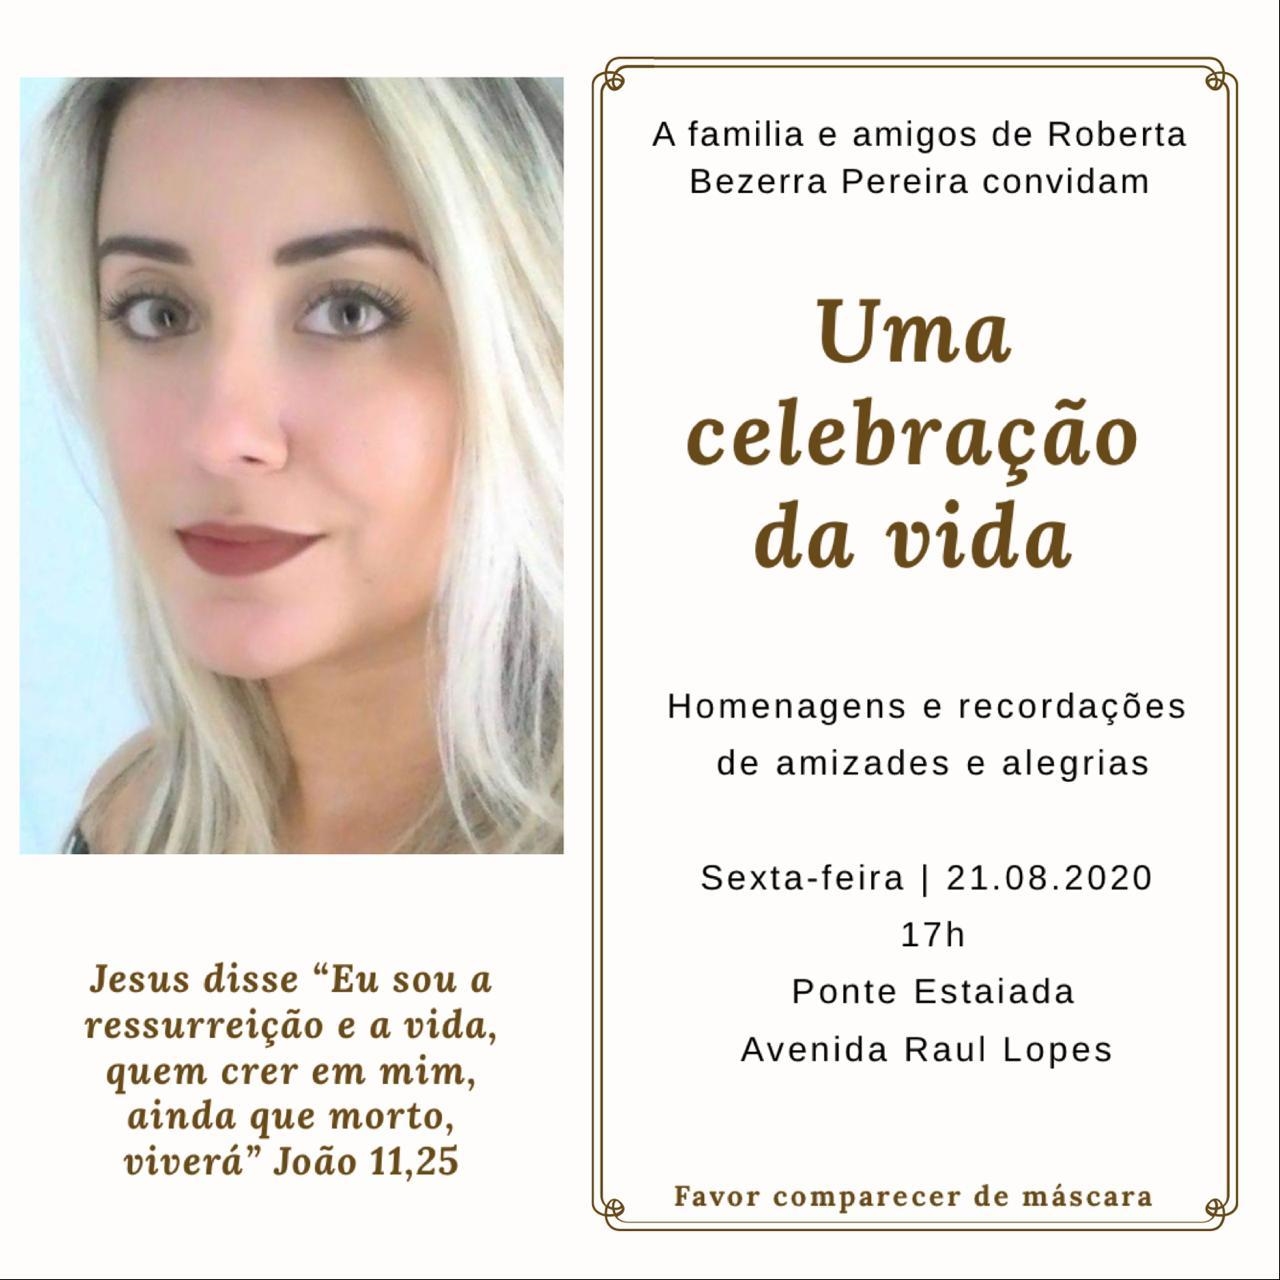 Convite para homenagem a Roberta Pereira